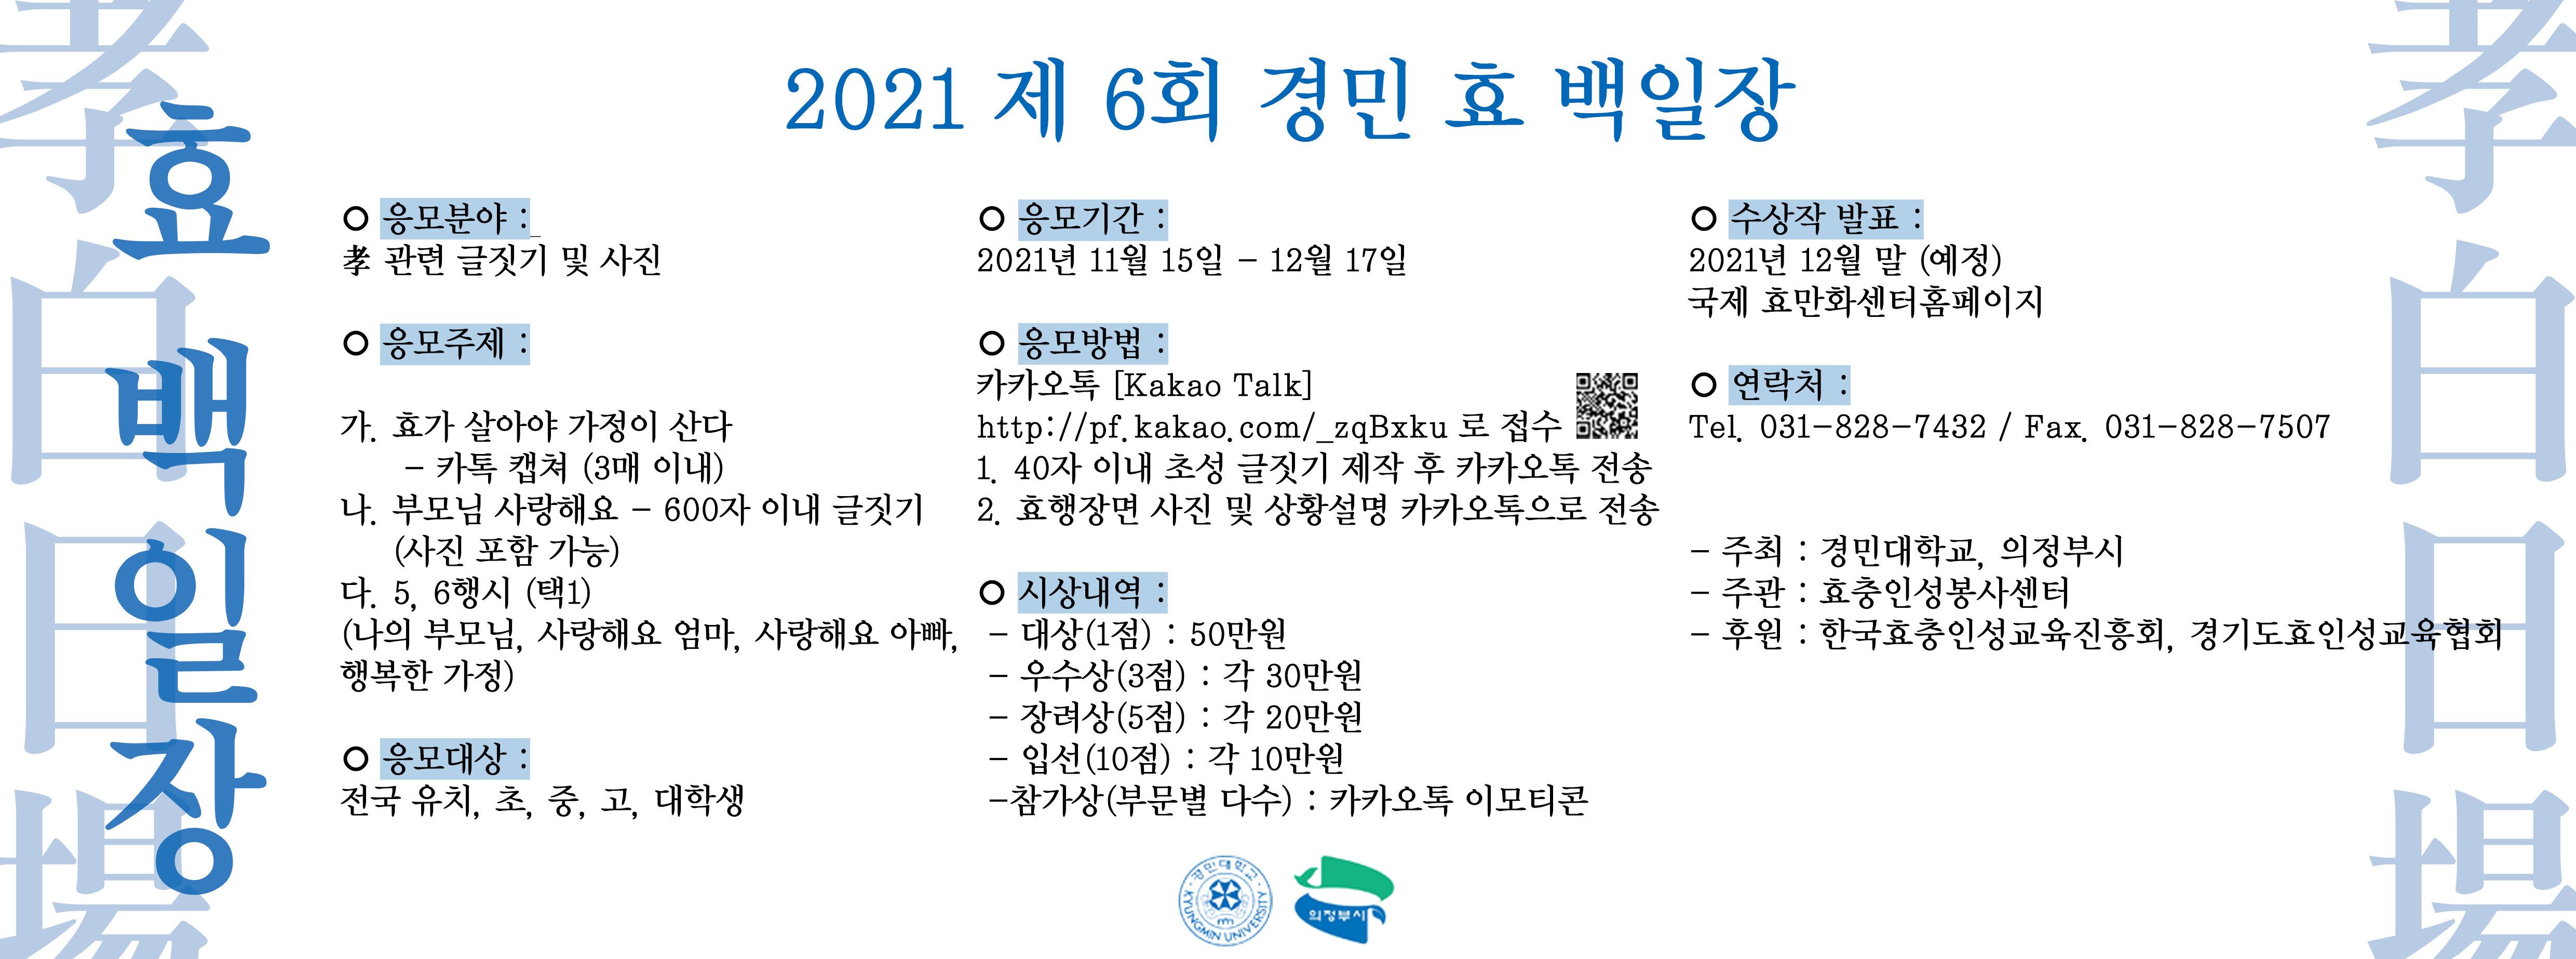 경민대학교, 2021 제 6회 경민 효 백일장 공모전 개최 사진